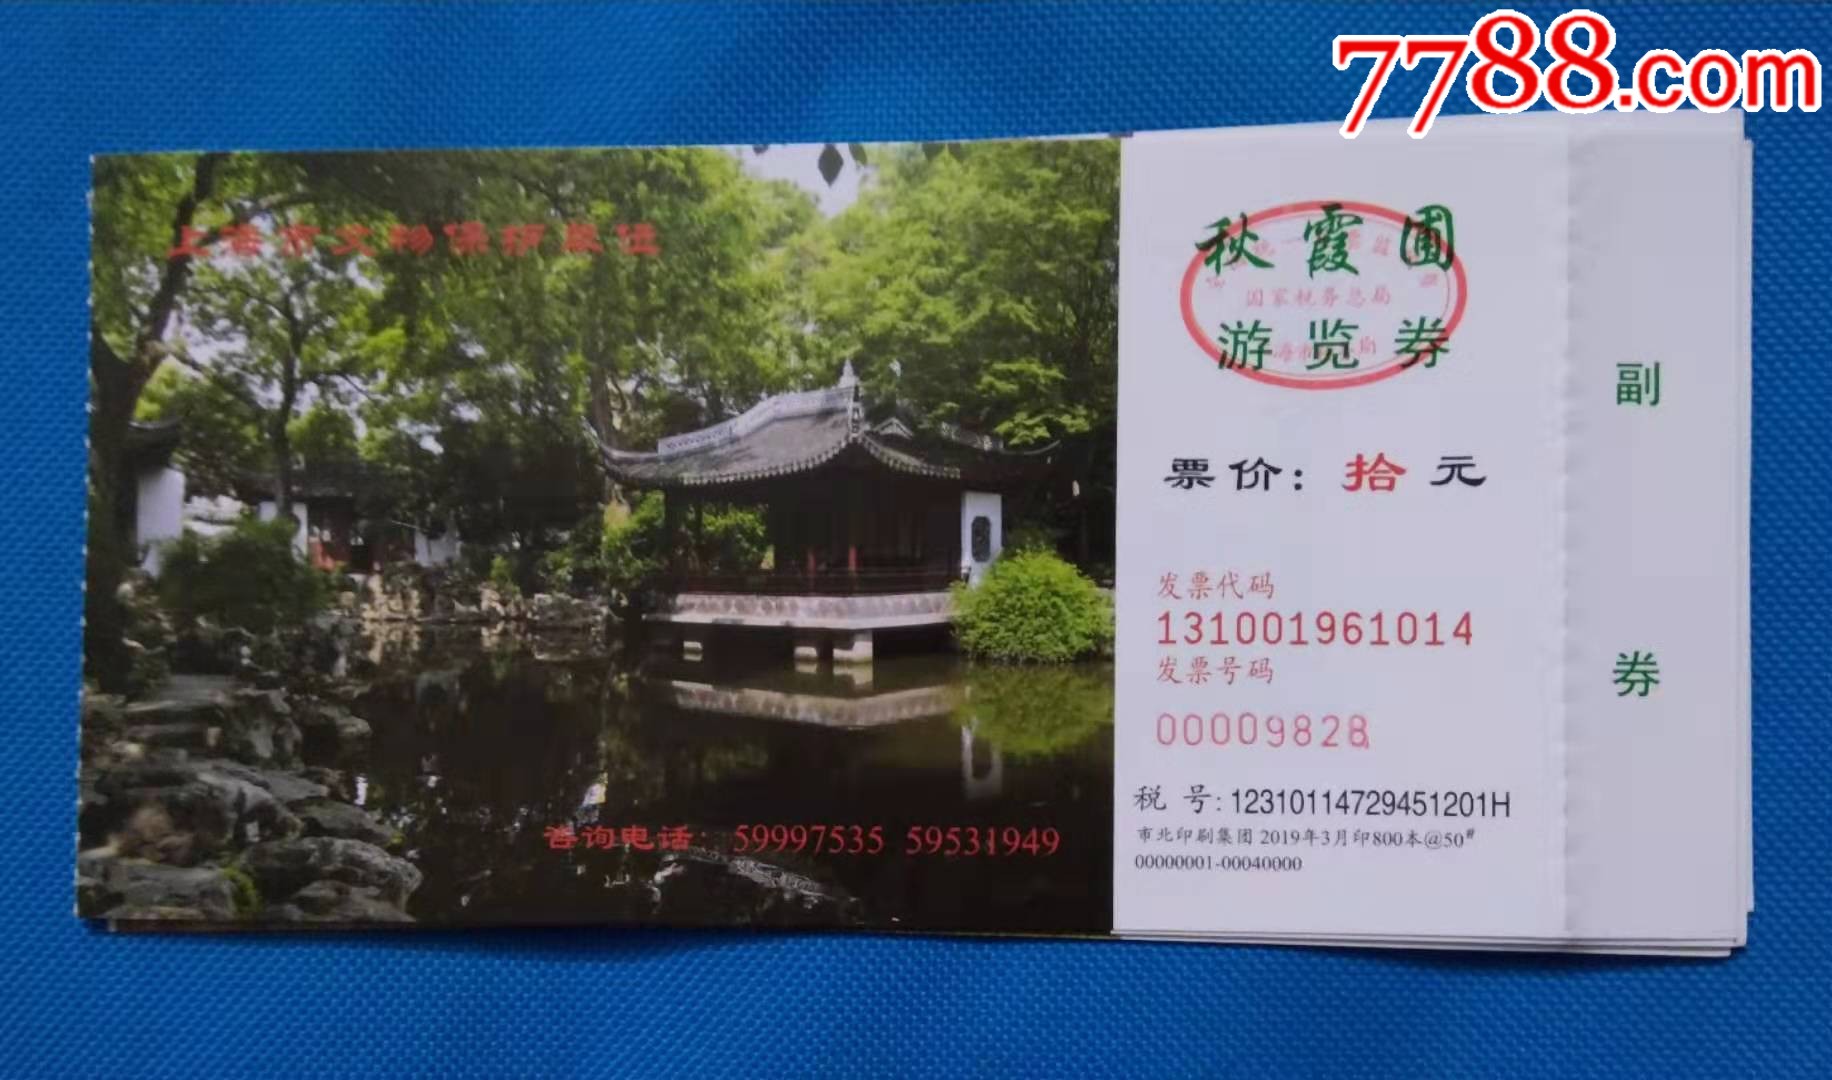 上海秋霞圃公园门票图片